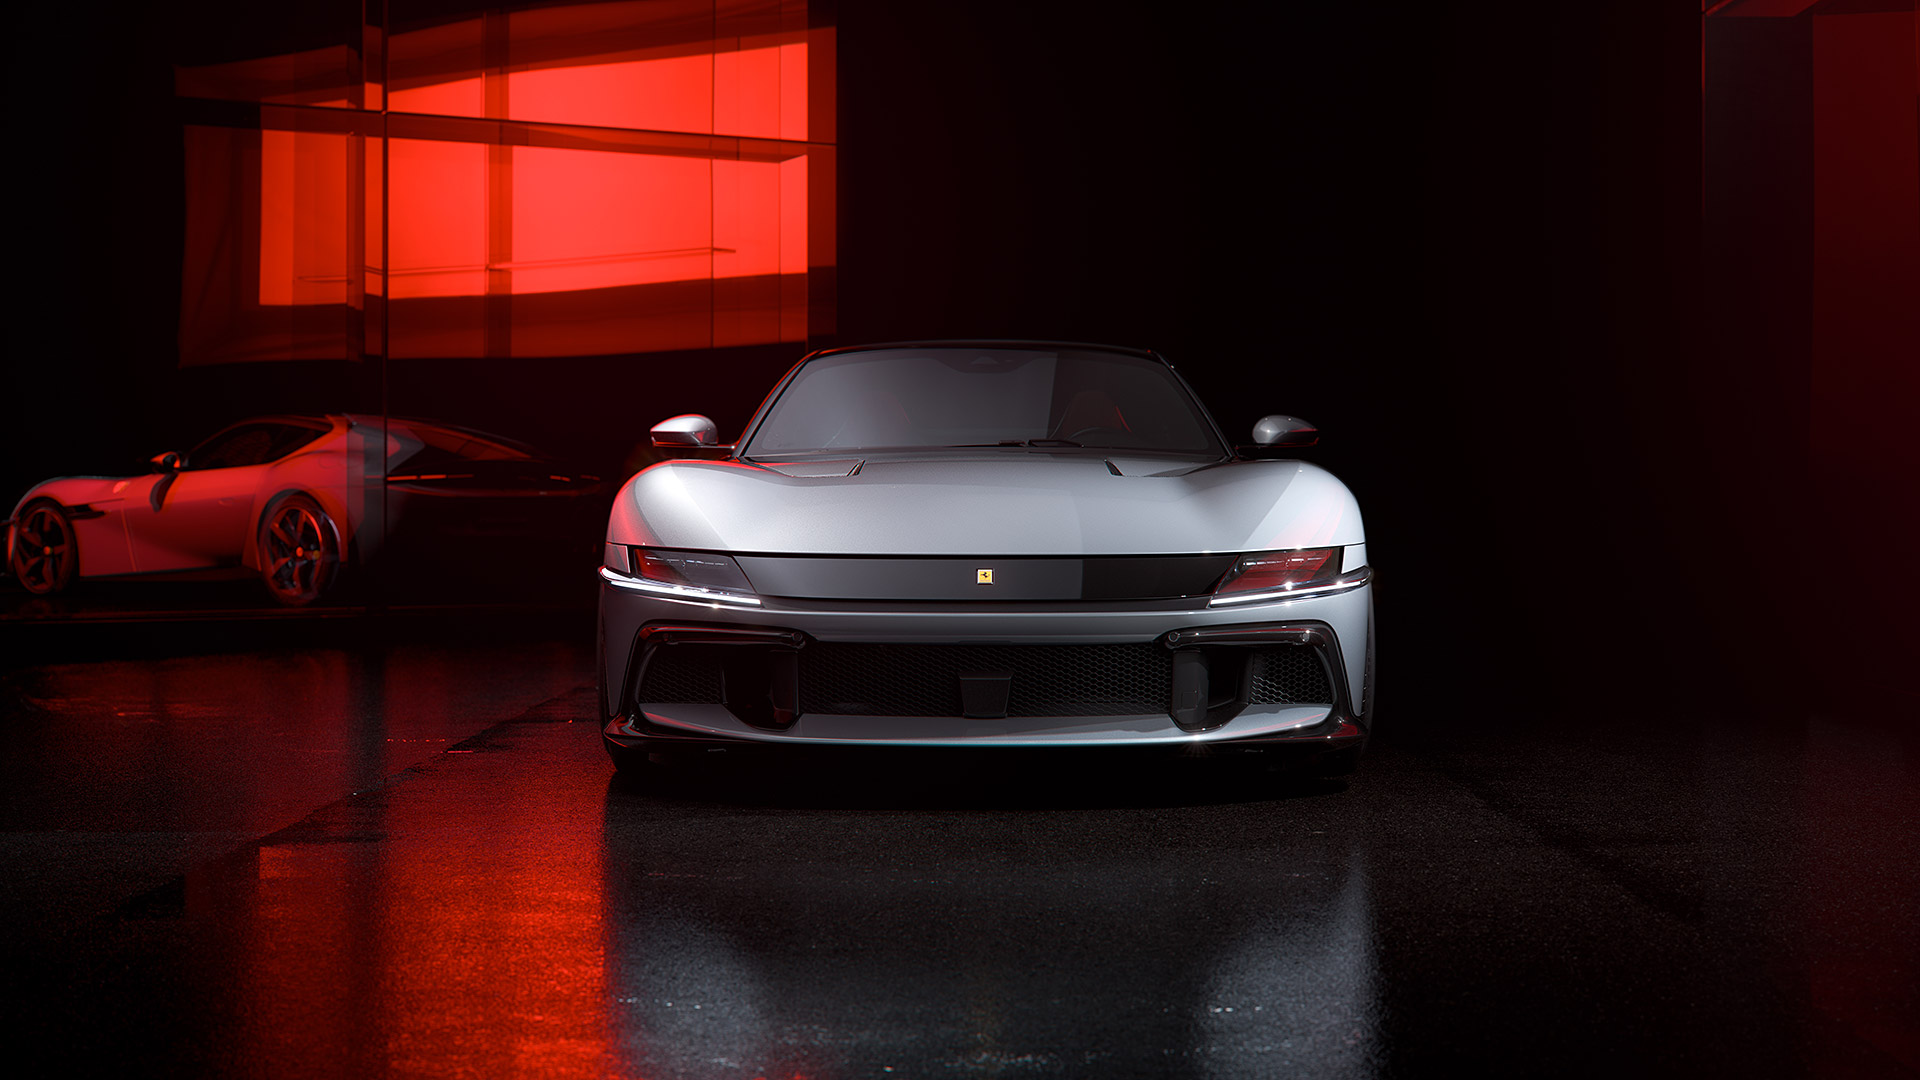  2025 Ferrari 12Cilindri Wallpaper.